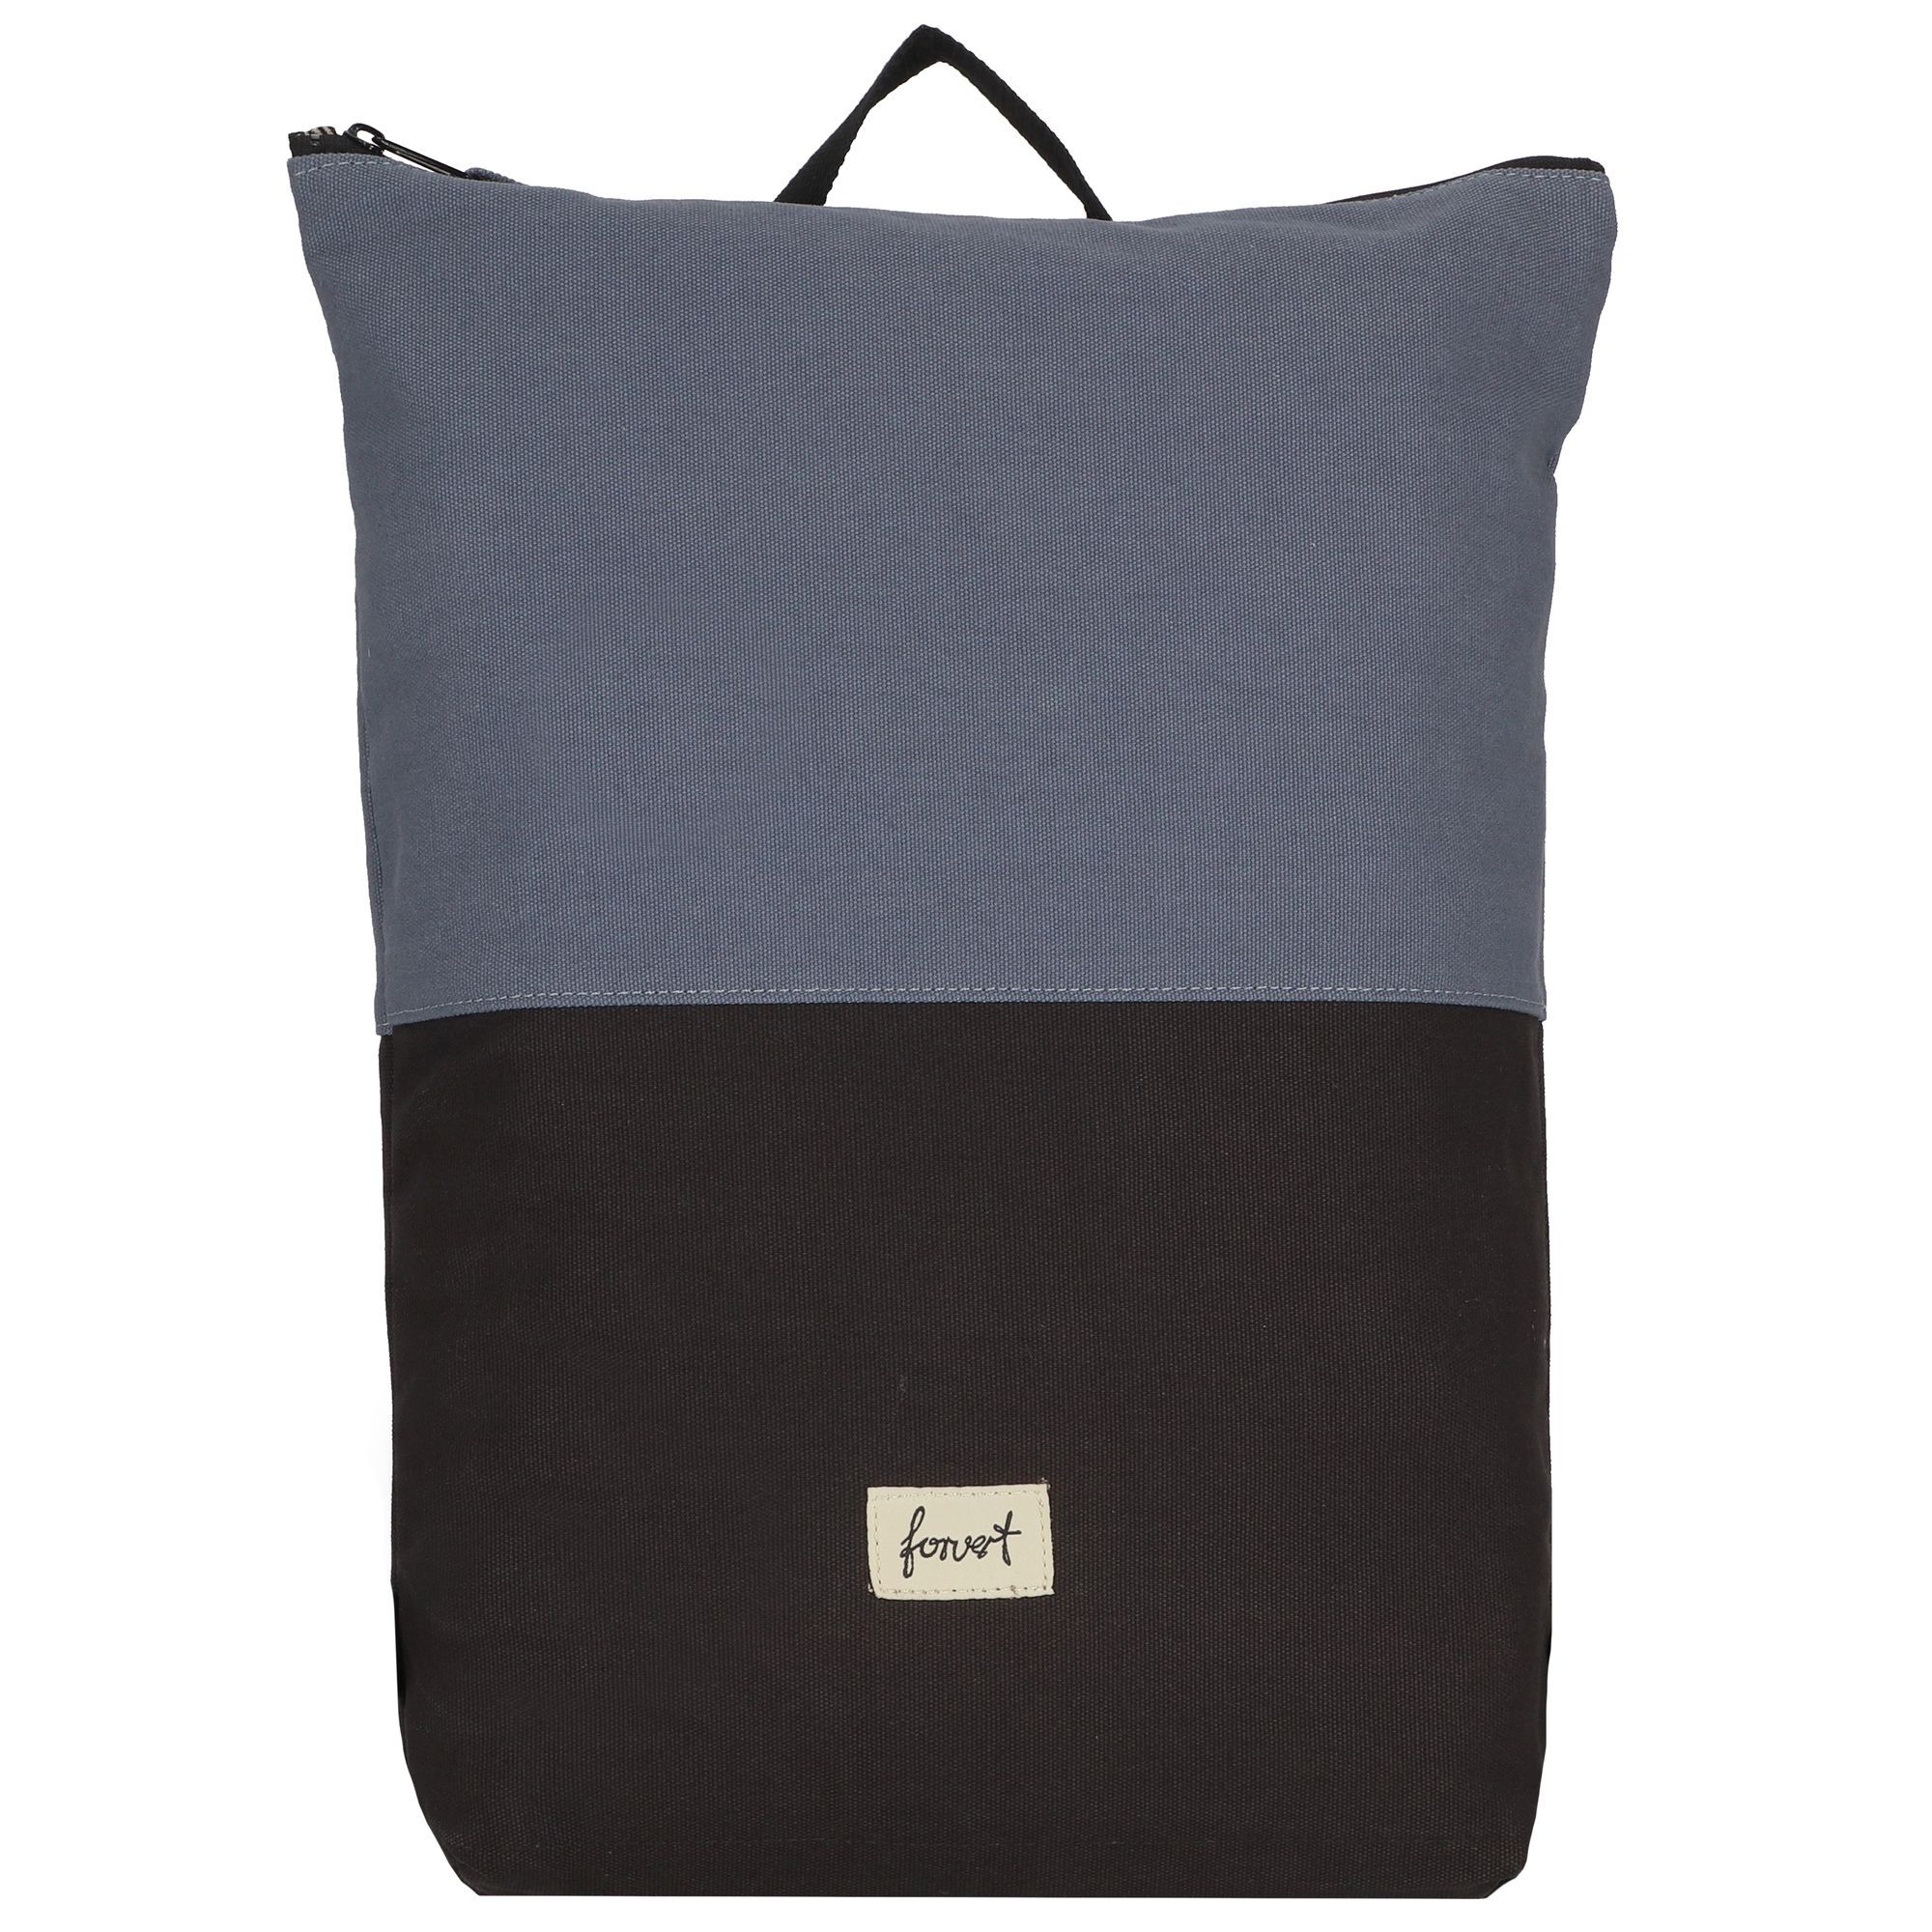 Рюкзак FORVERT Colin 45 cm Laptopfach, цвет black blue рюкзак wenger trayl 45 cm laptopfach цвет gravity black